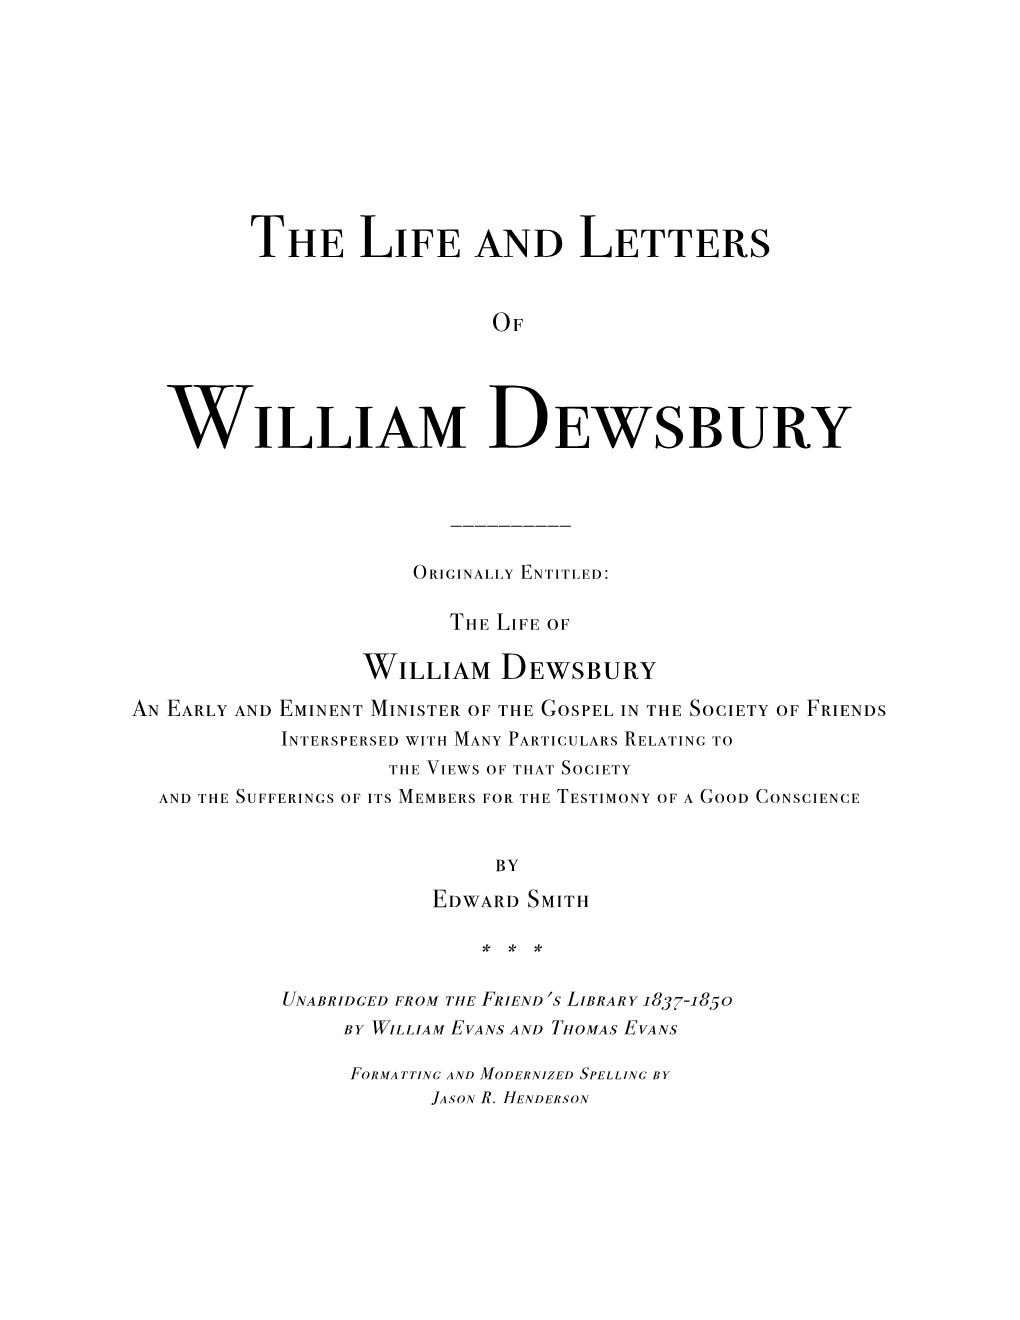 William Dewsbury